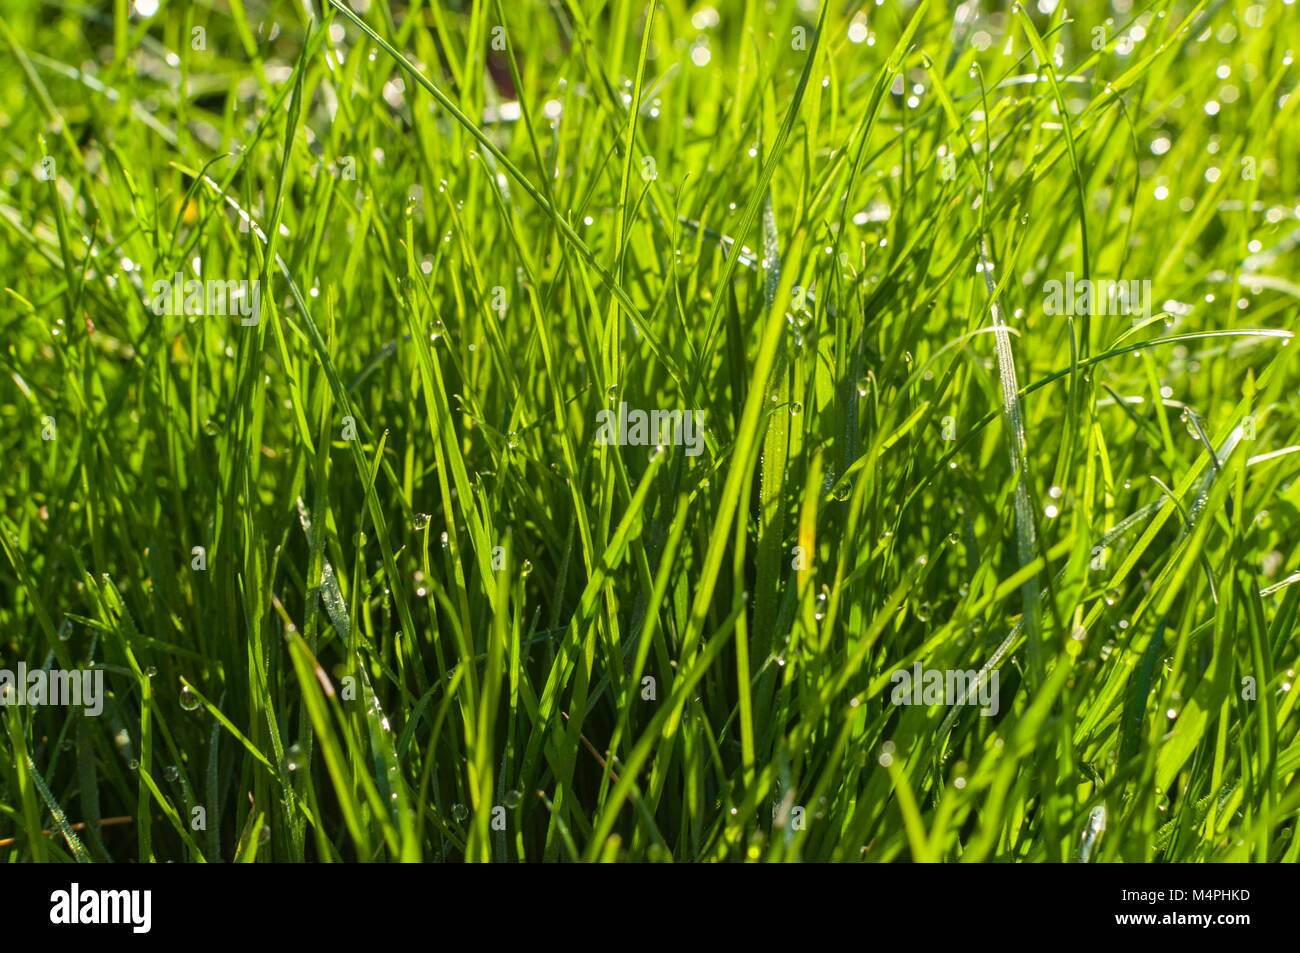 Eine Nahaufnahme Bild von üppigen grünen Rasen mit Wassertropfen auf es Stockfoto